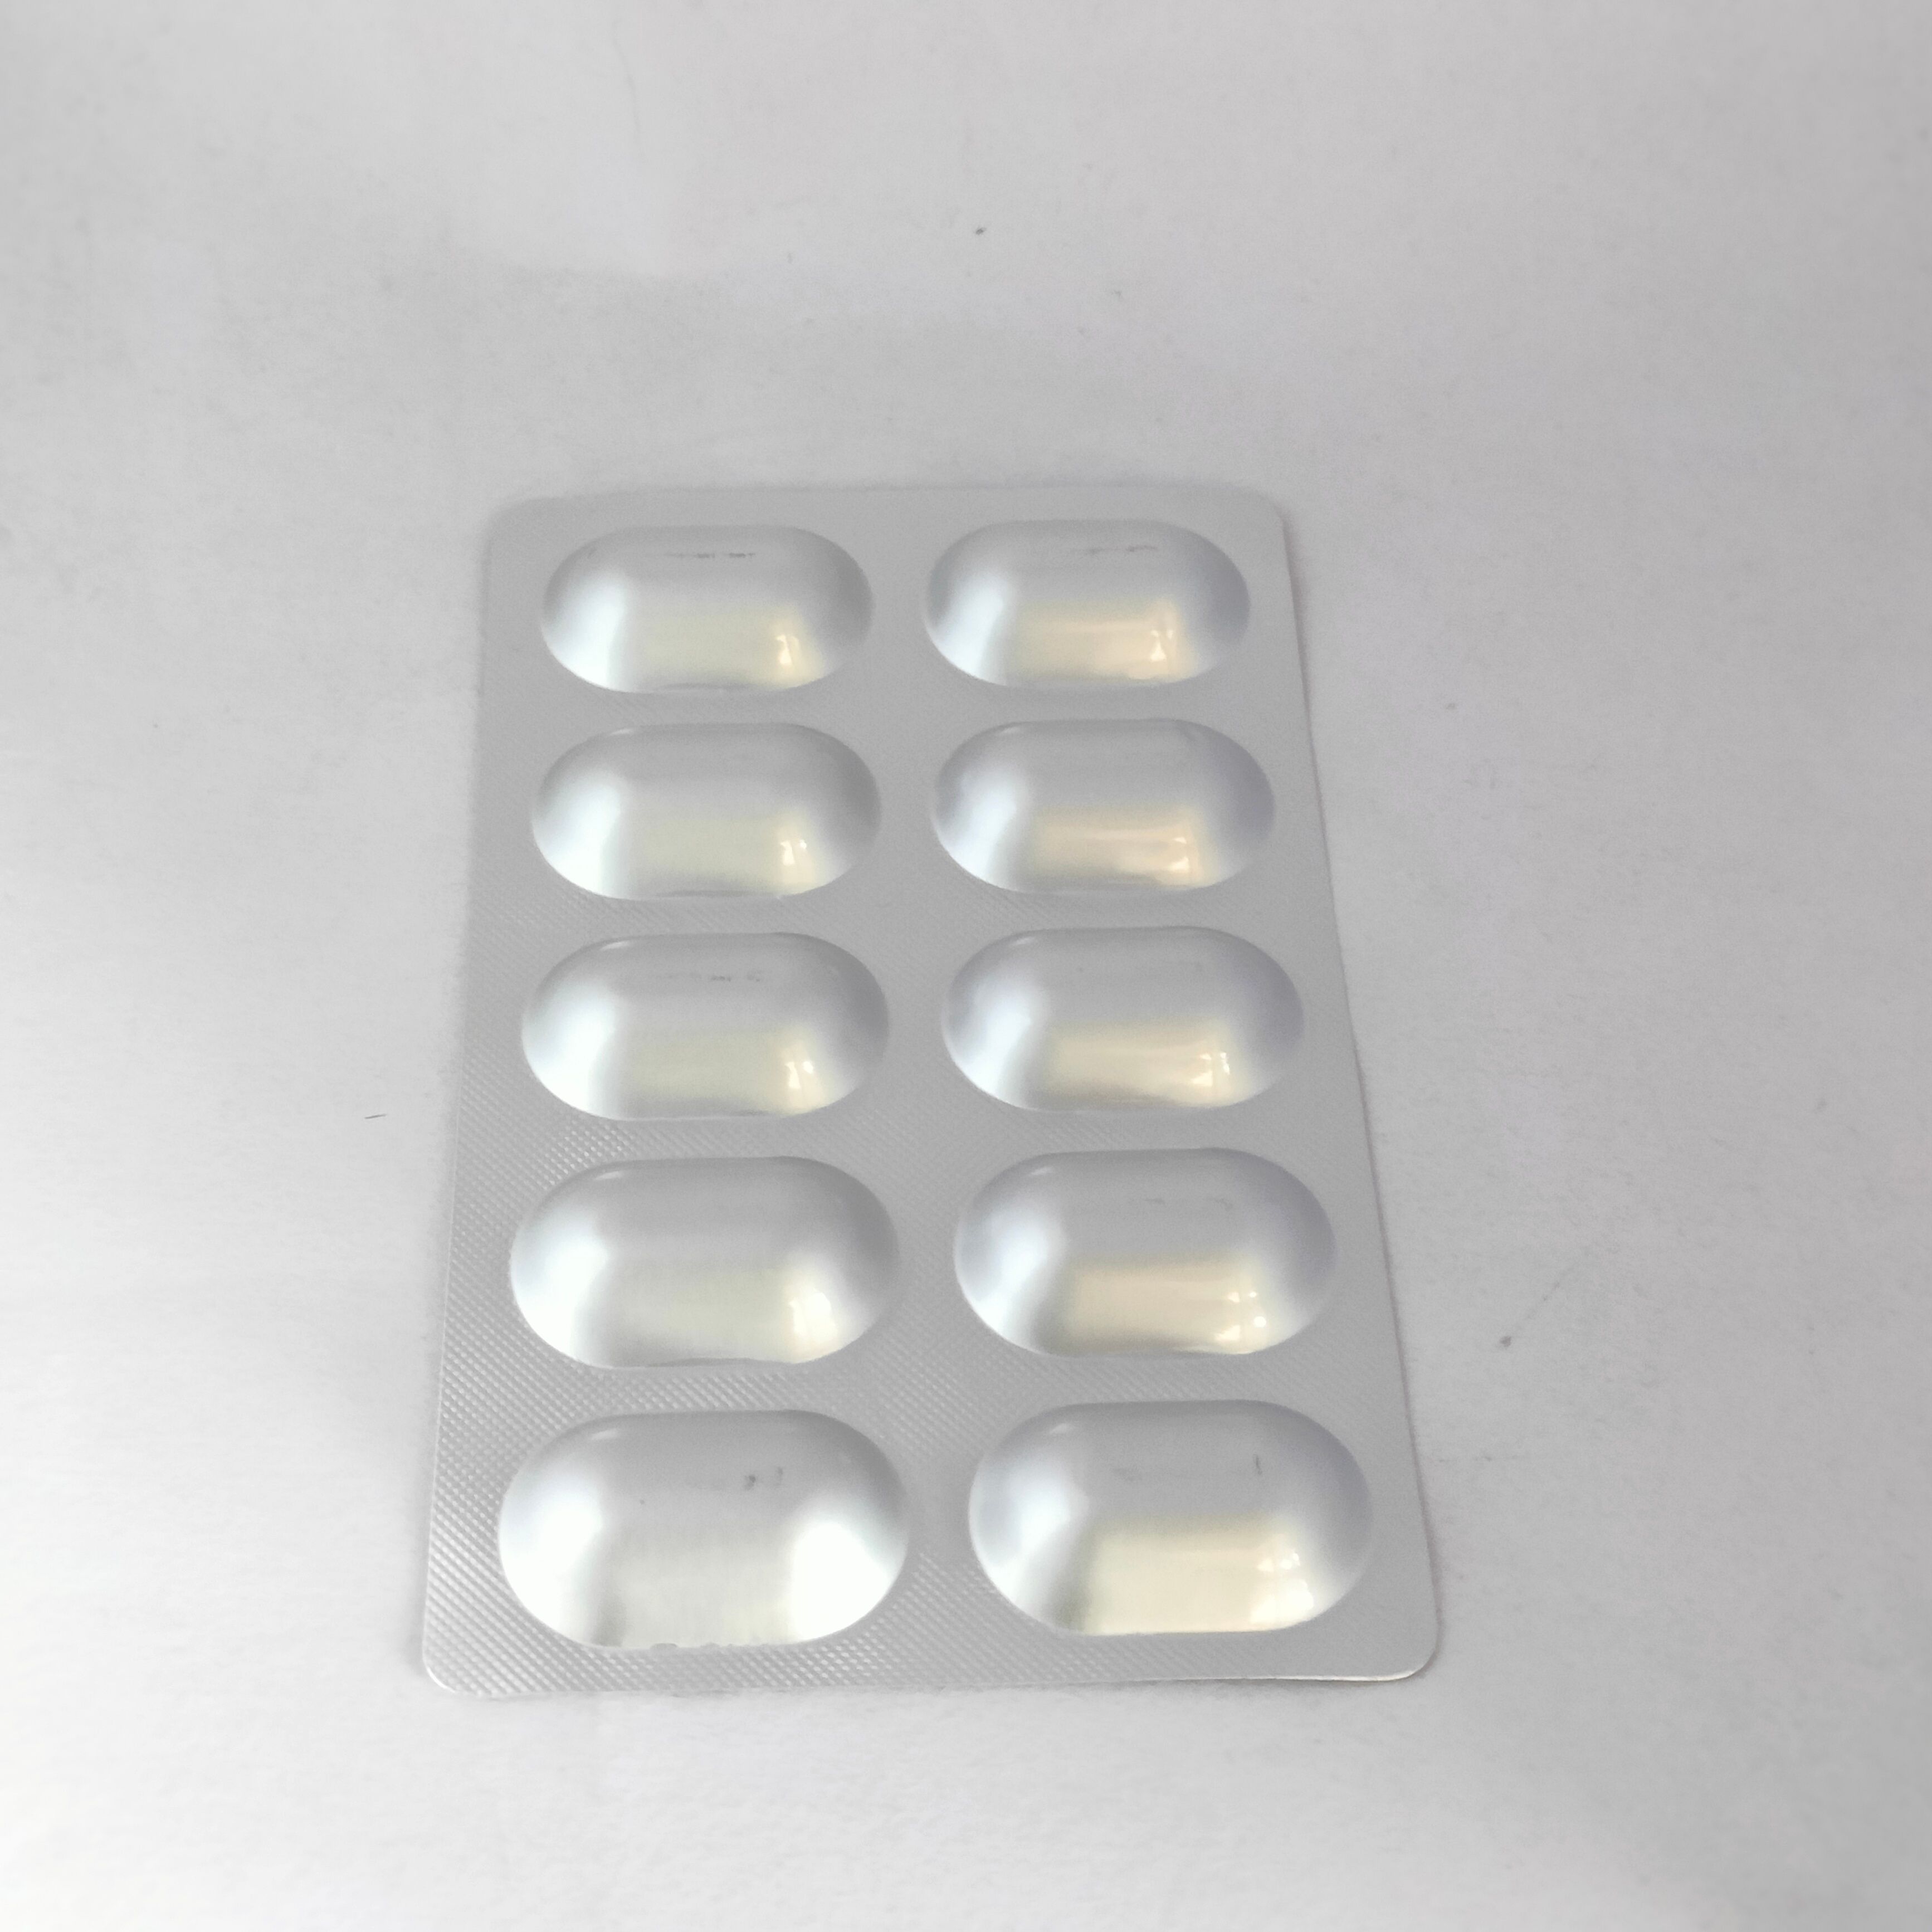 Rosuvastatin asp and Clopidogrel Tablets